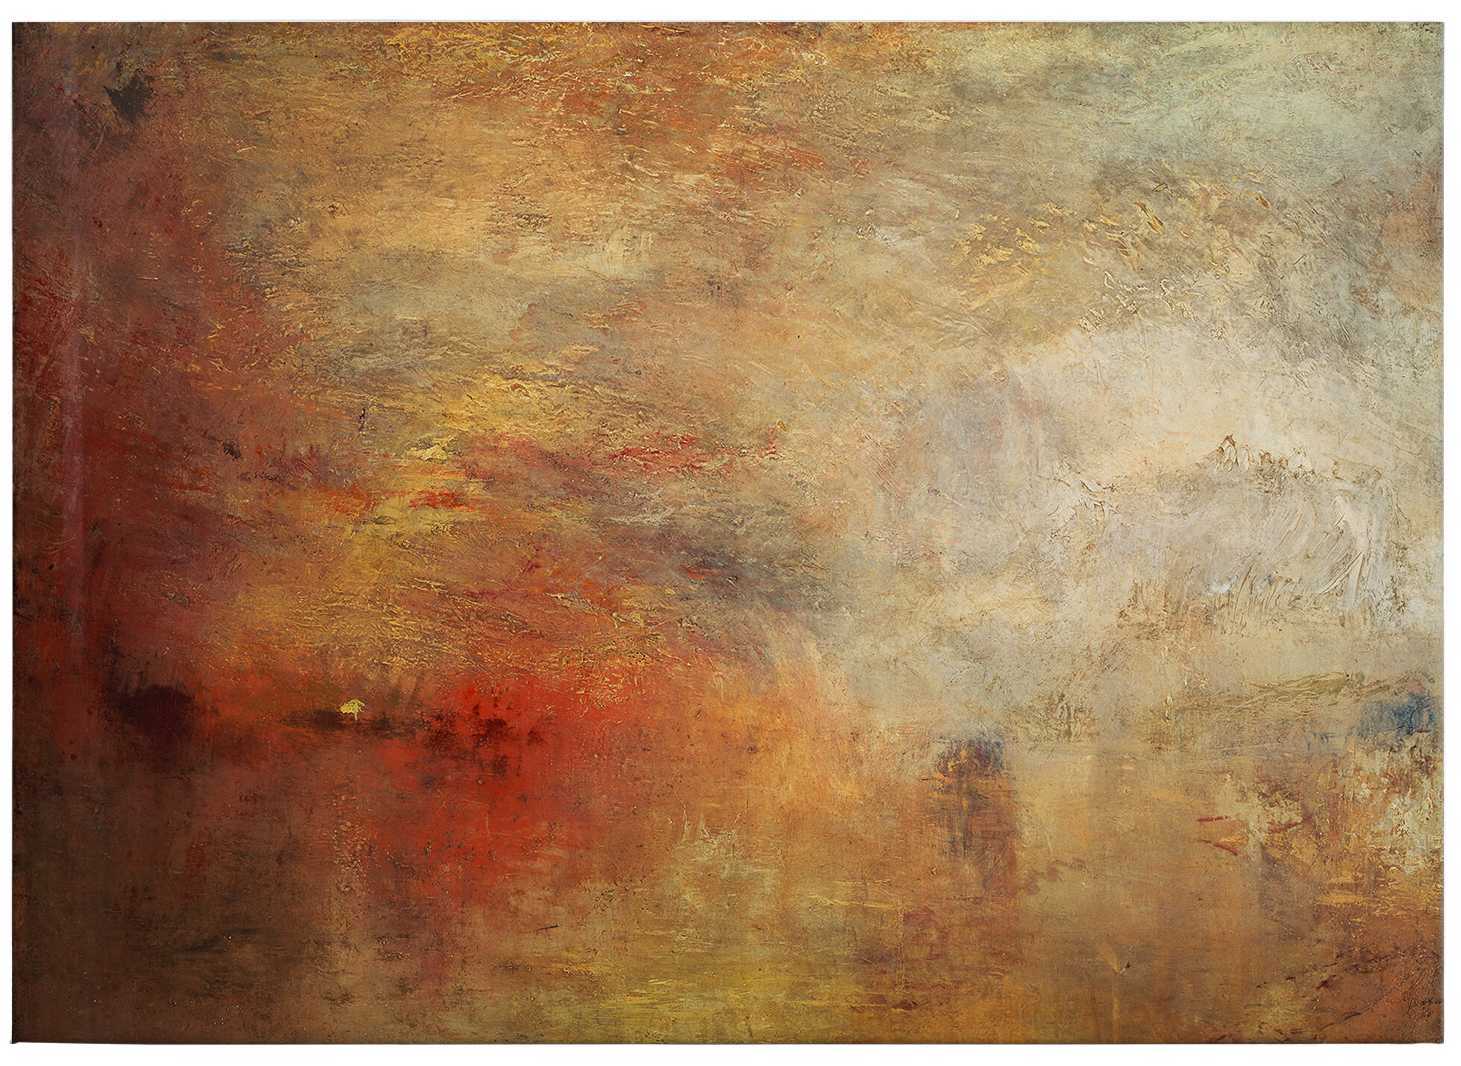             Tableau sur toile de Turner "Coucher de soleil sur la mer" - 0,70 m x 0,50 m
        